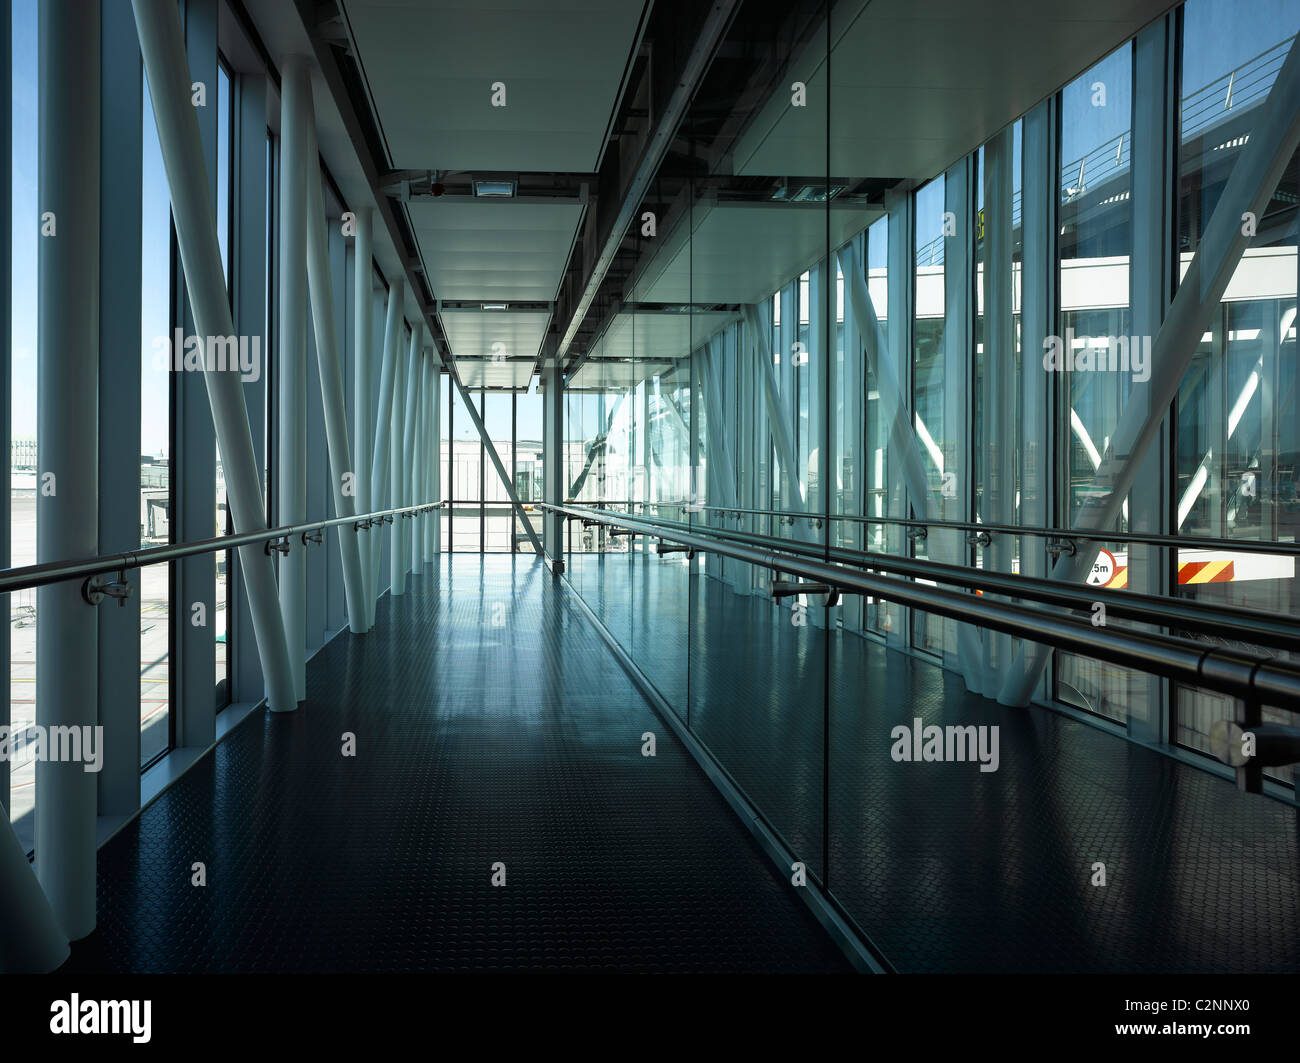 Dublin Airport, Terminal 2. Corridor Stock Photo